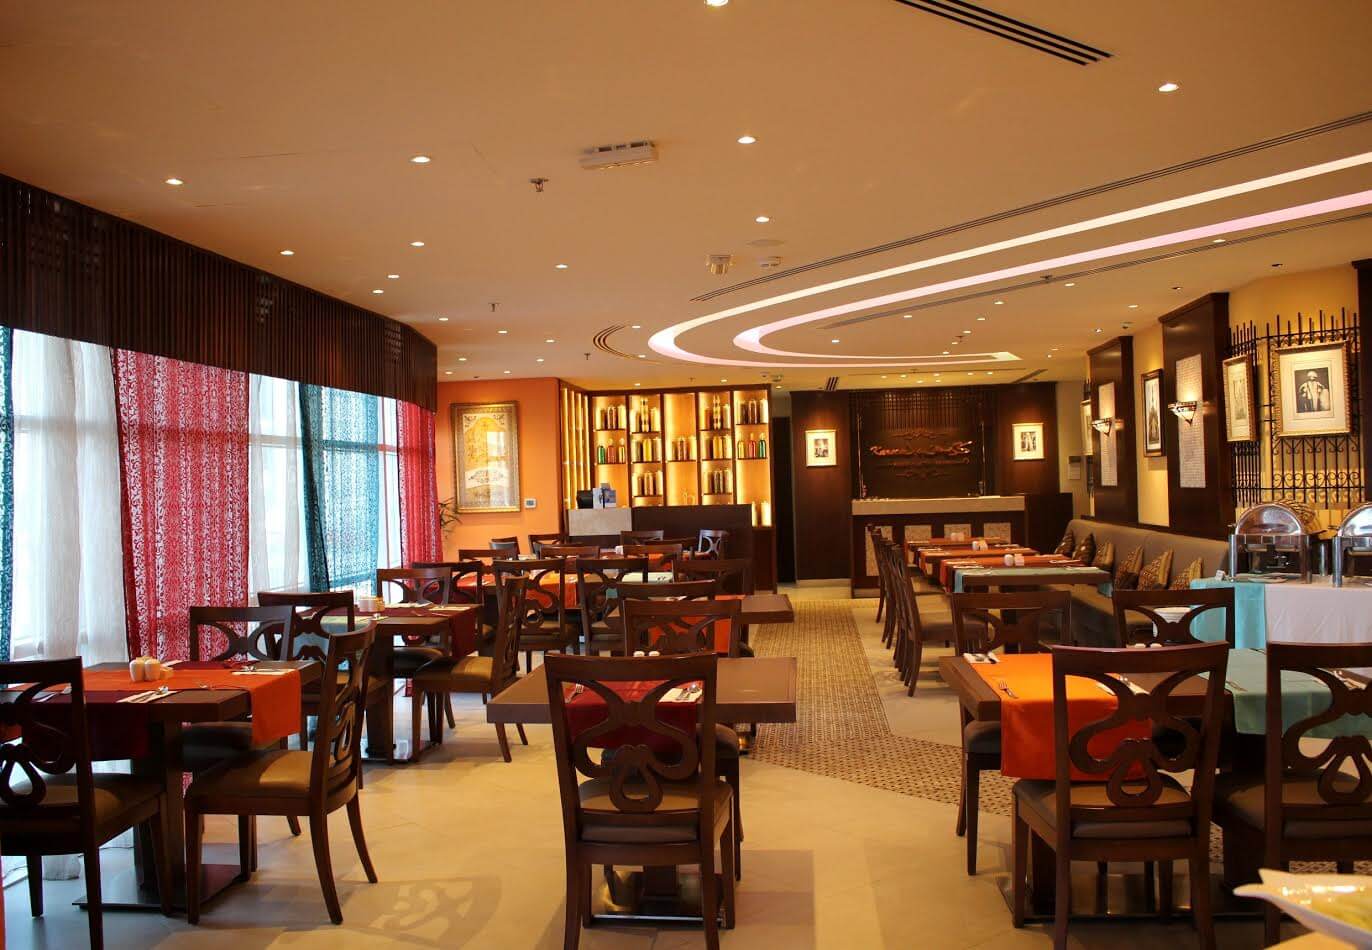 مطعم كريمز أبوظبي يقدم قائمة إفطار شهية جديدة